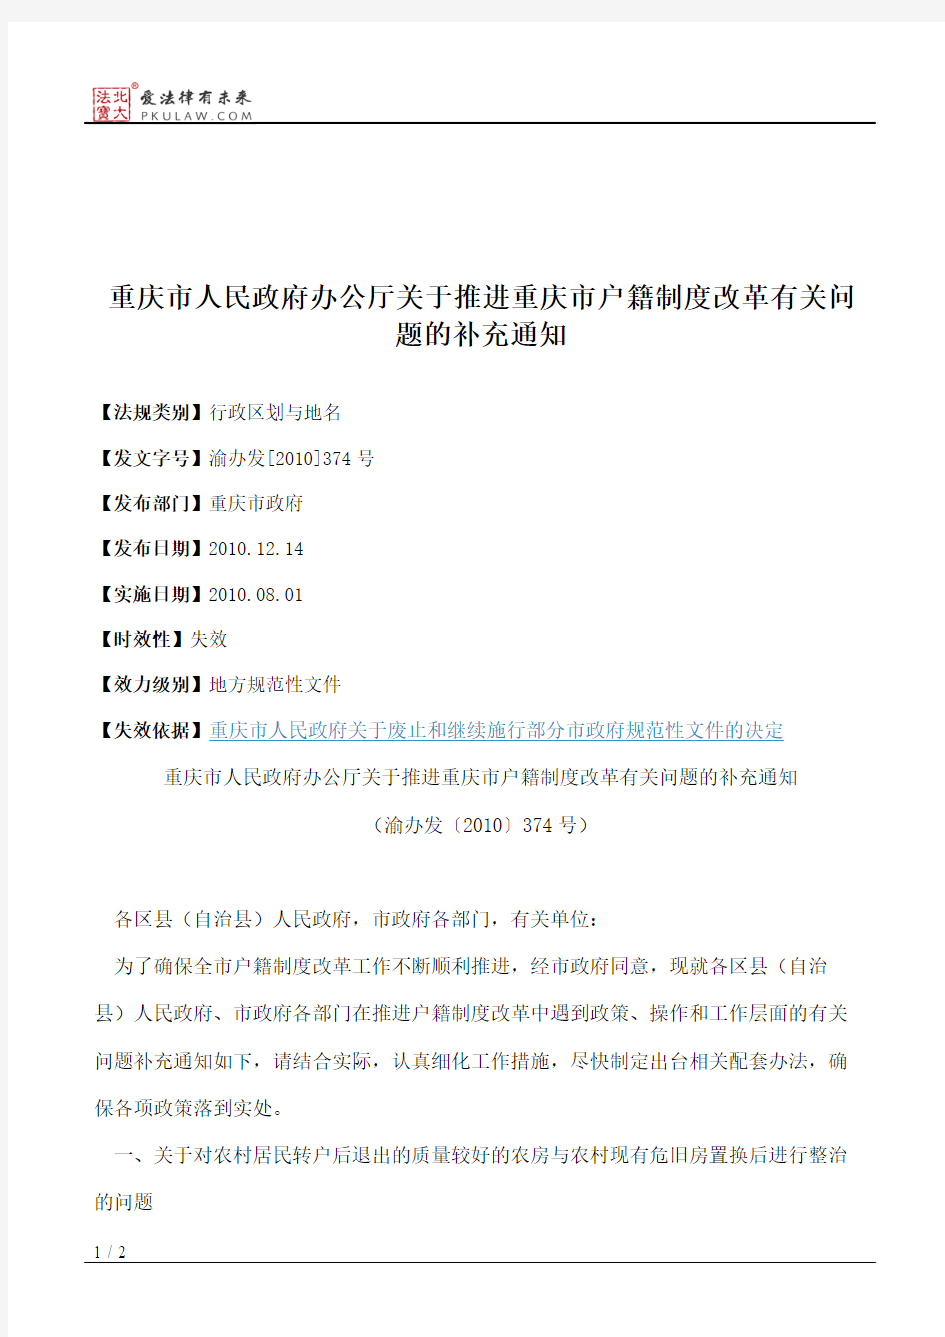 重庆市人民政府办公厅关于推进重庆市户籍制度改革有关问题的补充通知